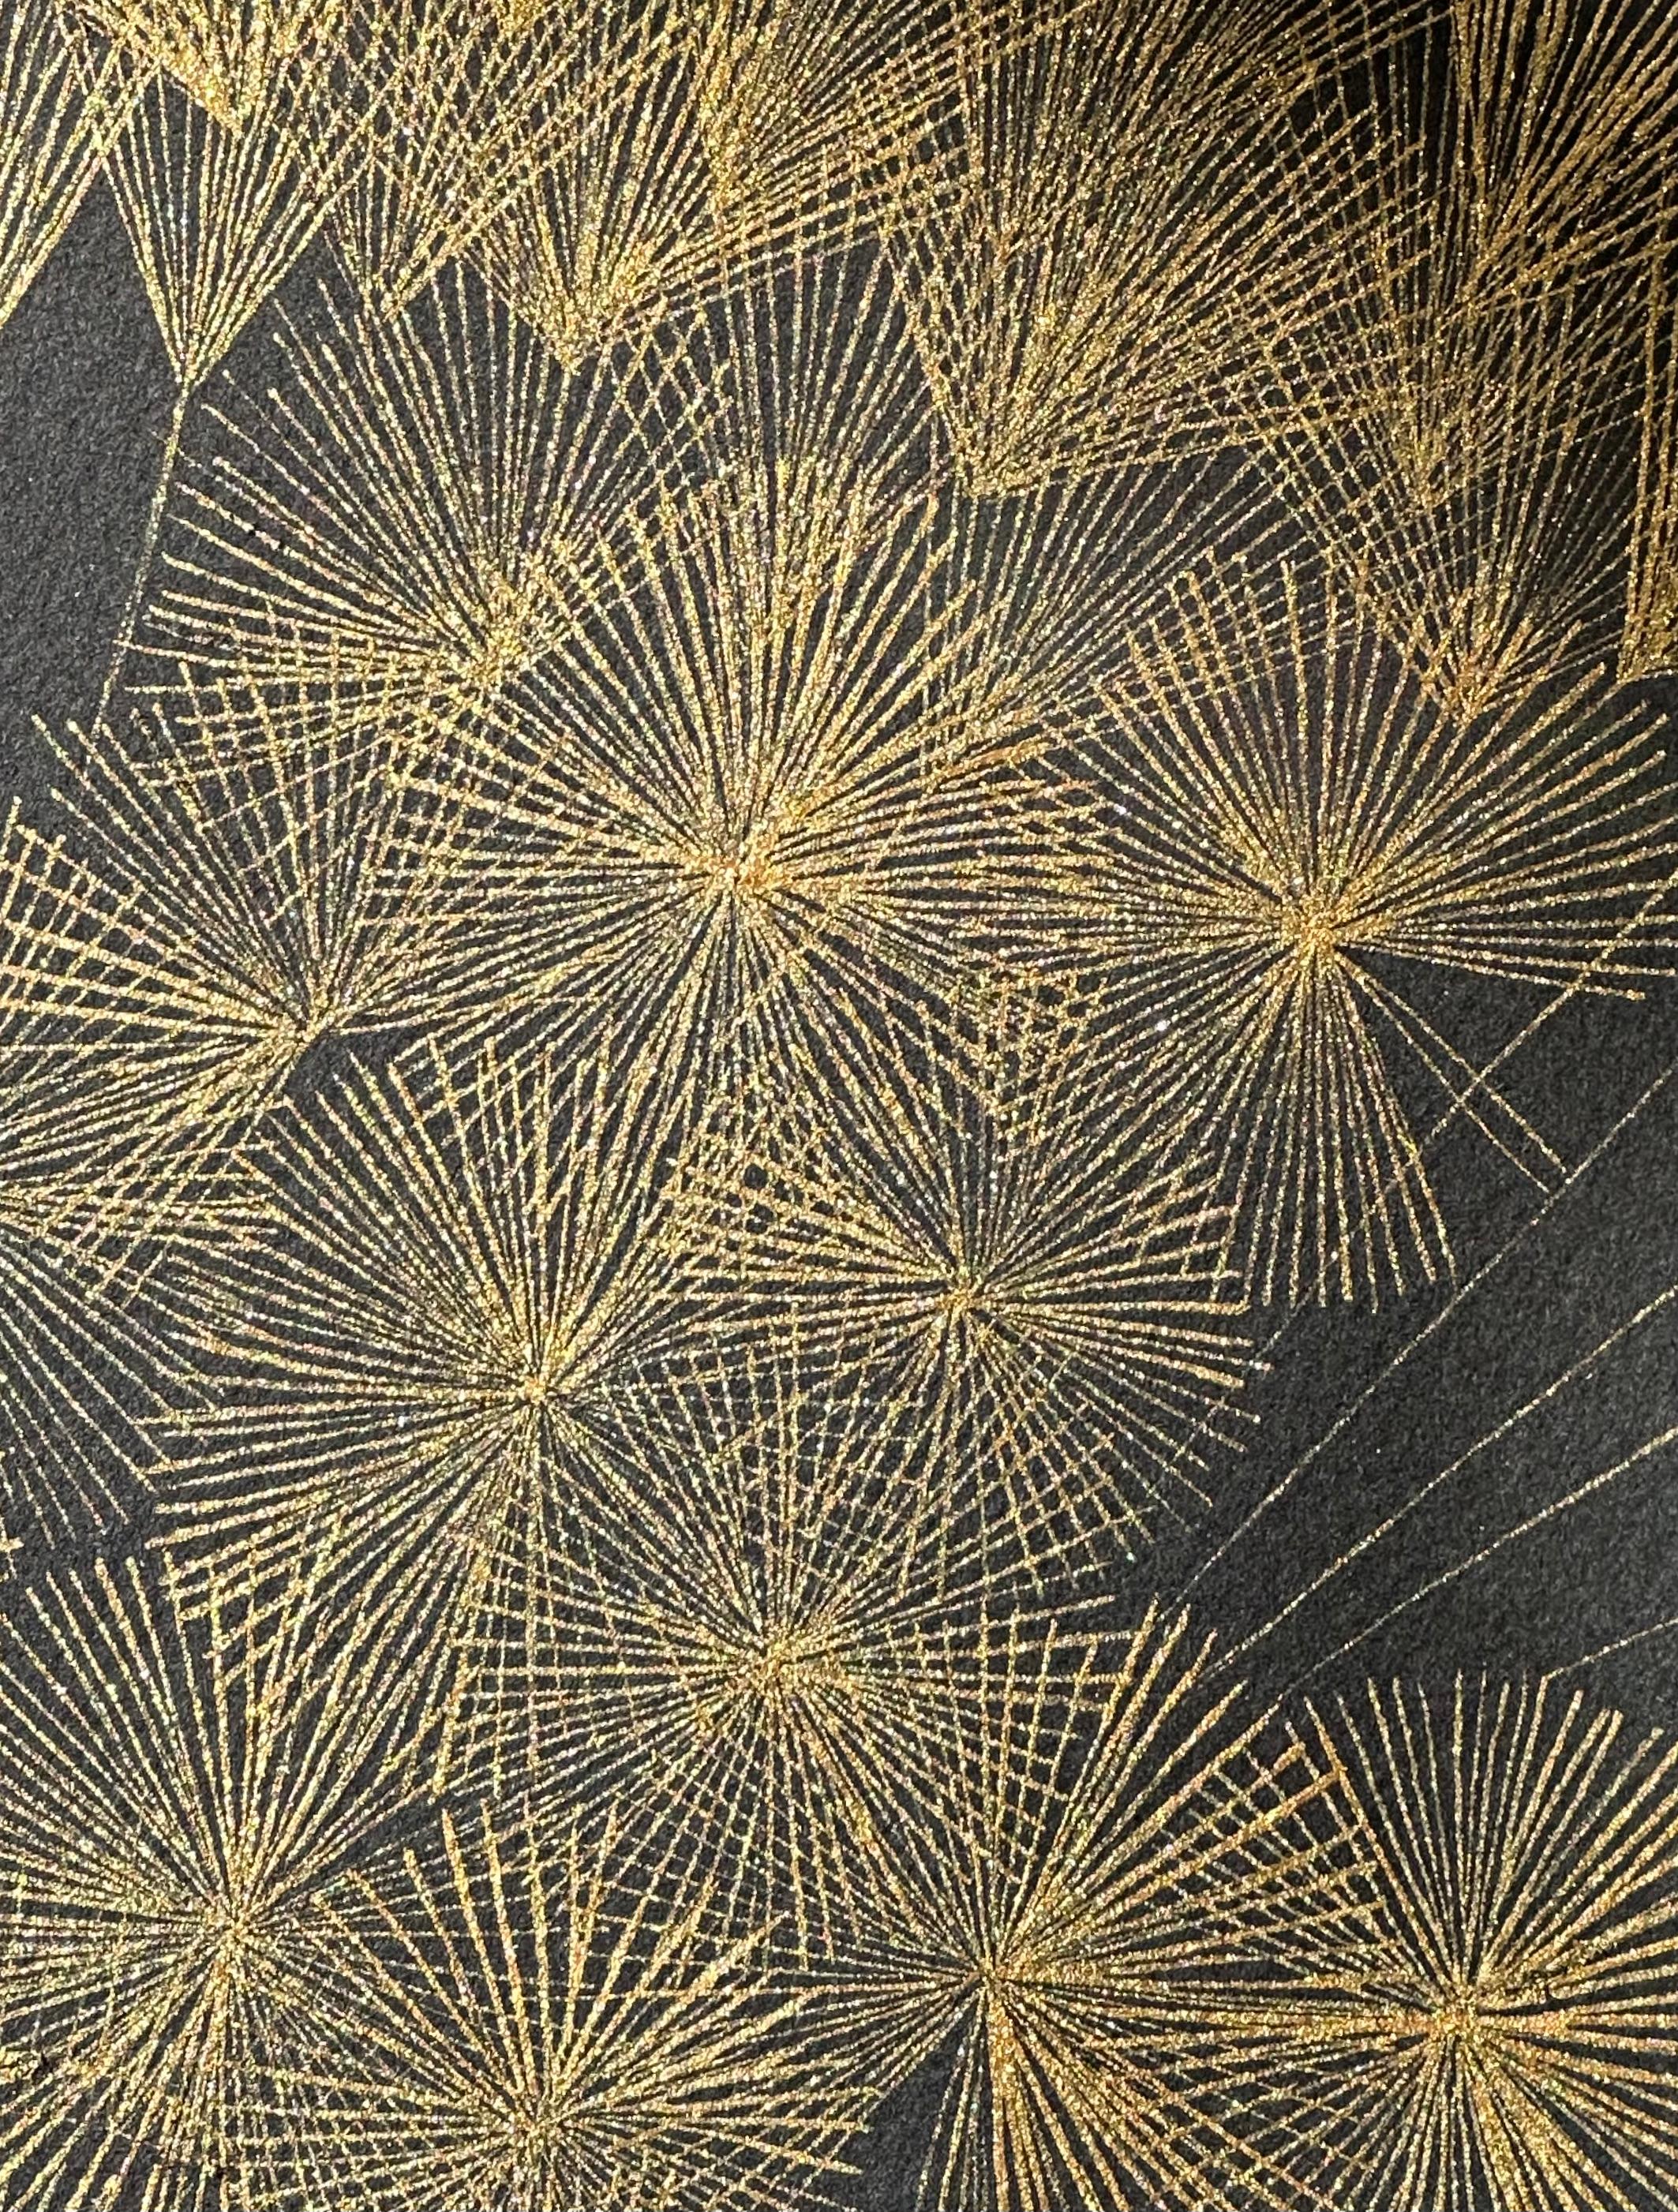 Große Löwenzahn Sechs, Botanische Malerei Schwarz, Gold Blumen, Blätter, Stem 6